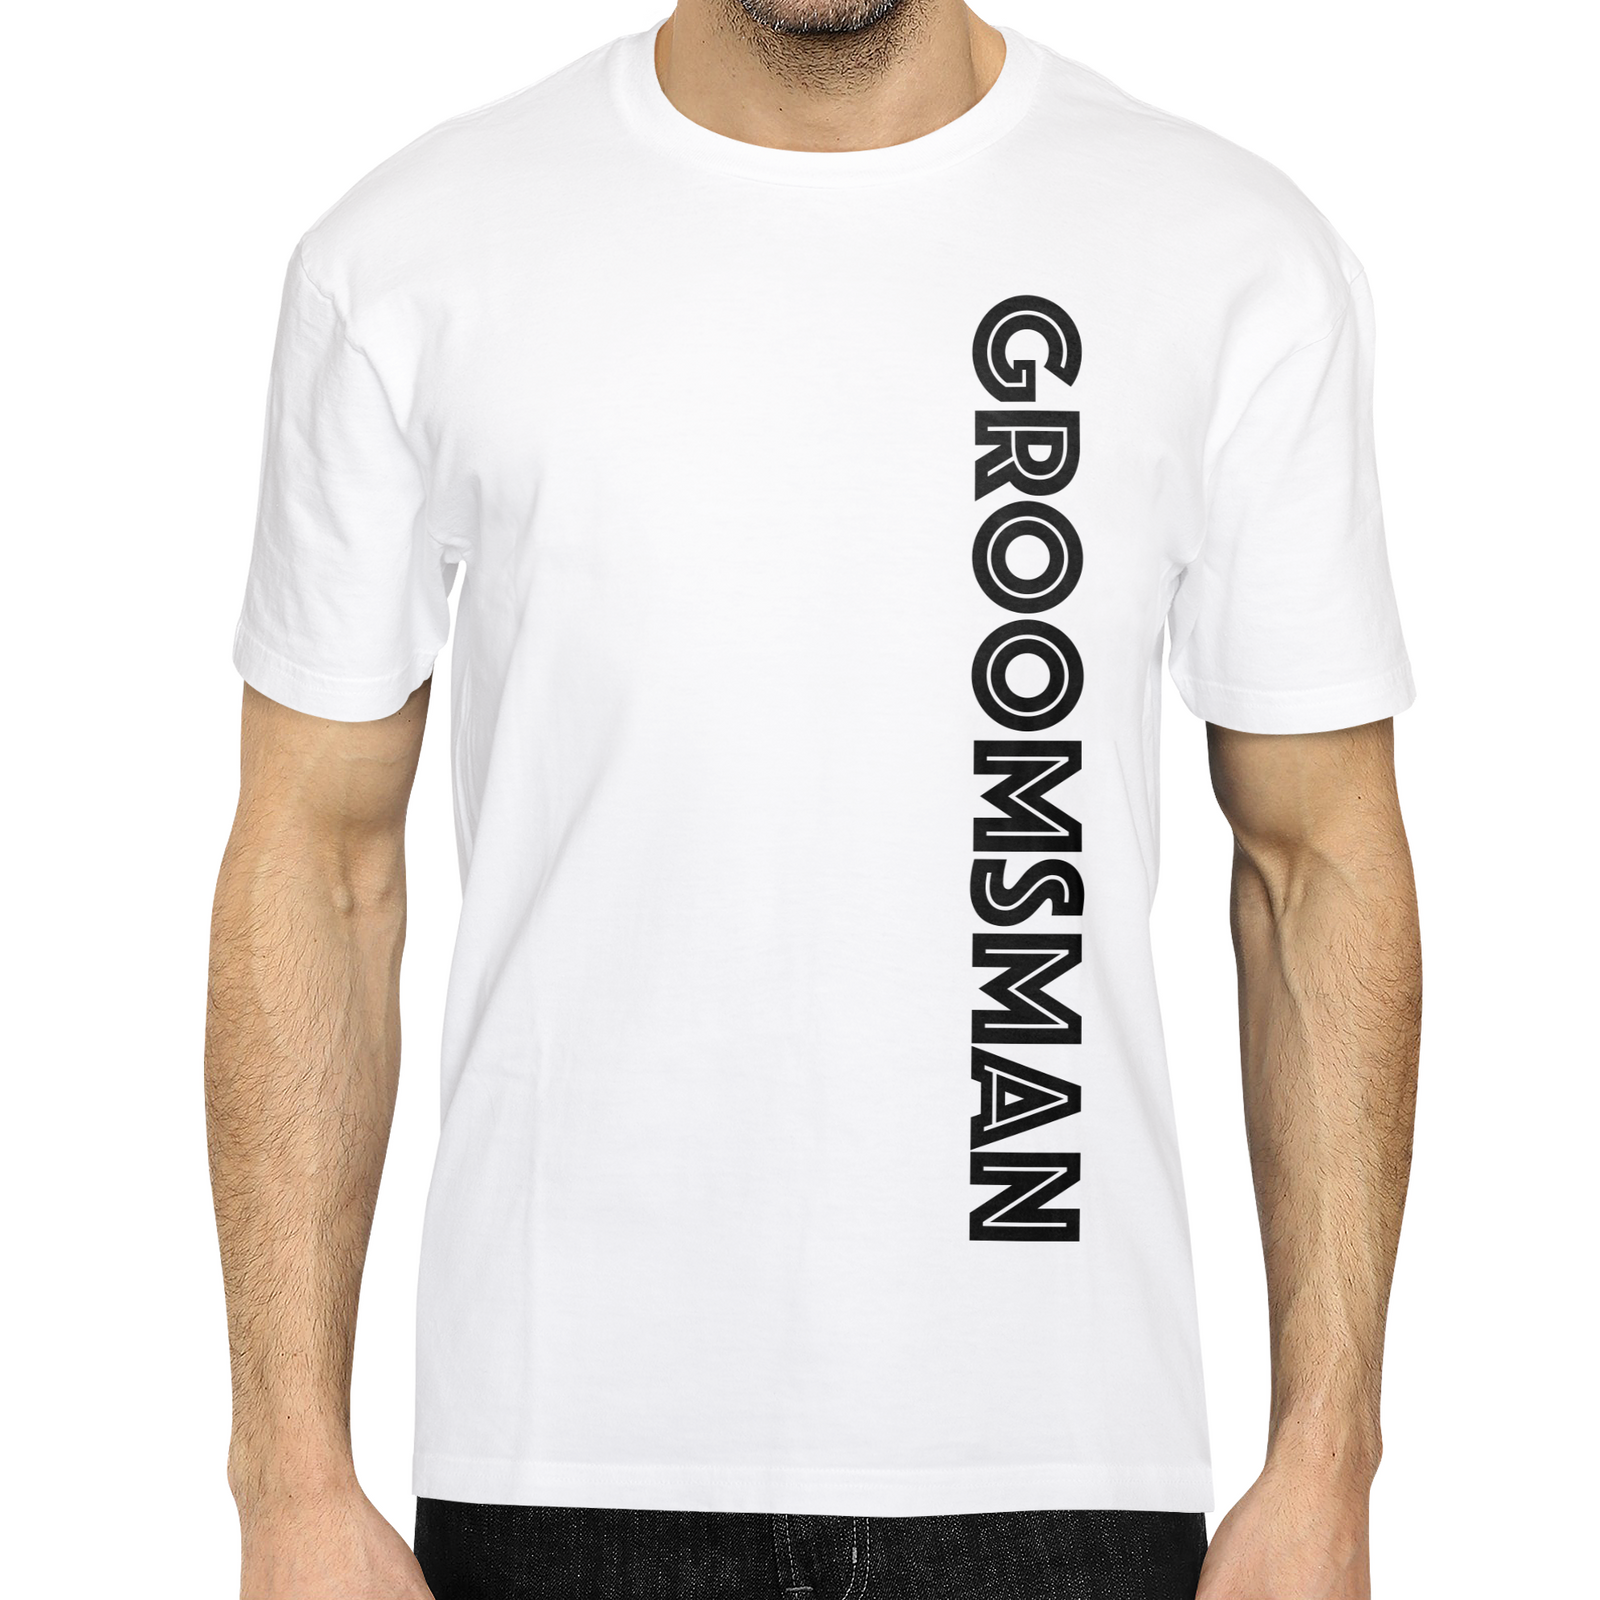 Groomsman/Best Man/Married Man Koozies – Vinyl Designs Store